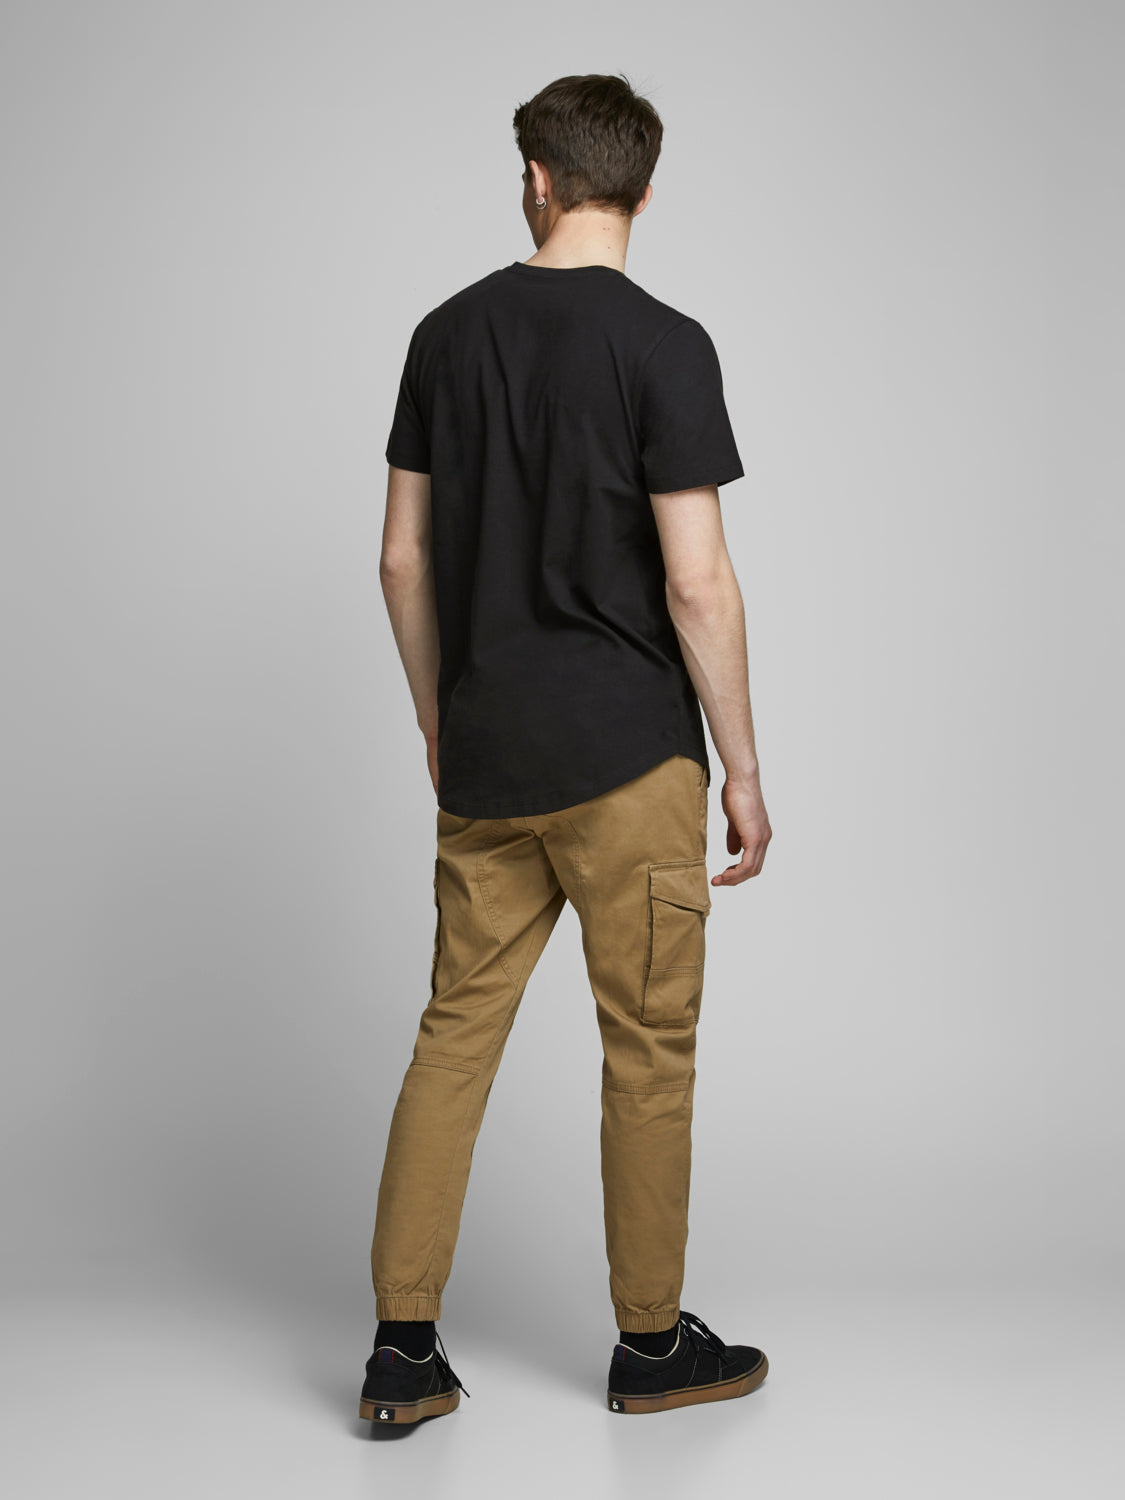 JJENOA T-Shirt - Black